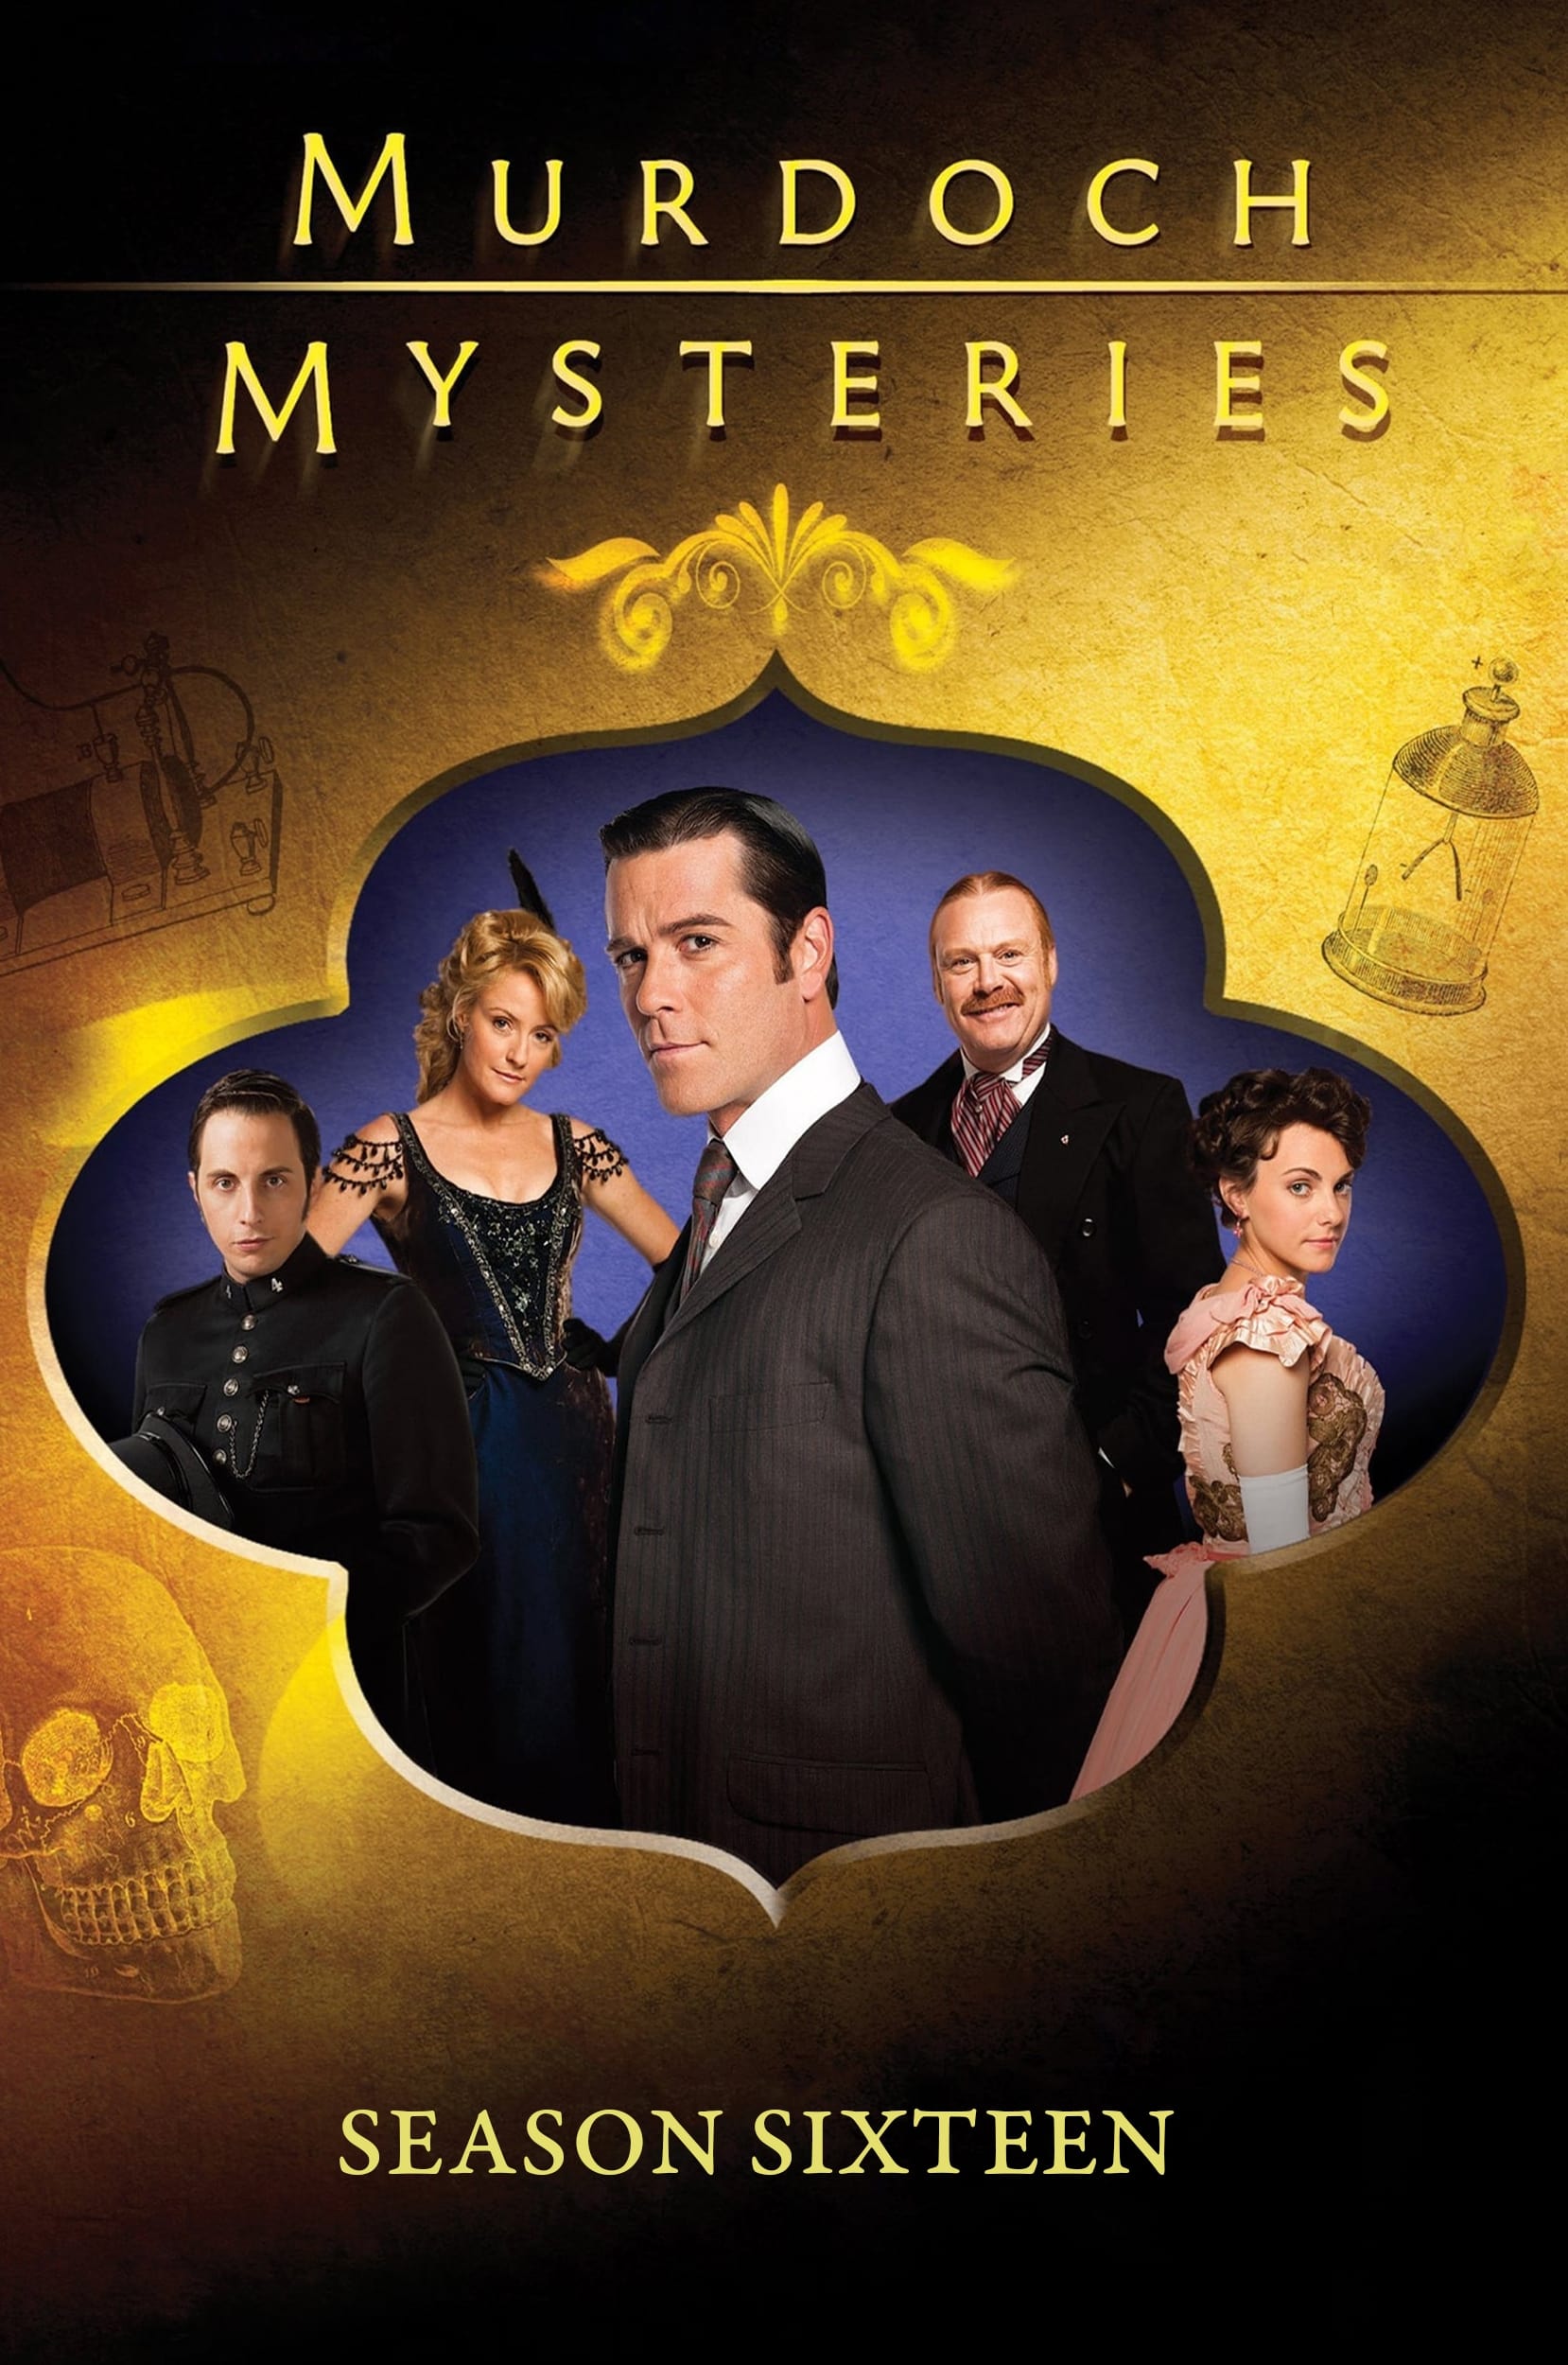 Murdoch Mysteries (2008) S16pt2 E09->E16 NLsubs